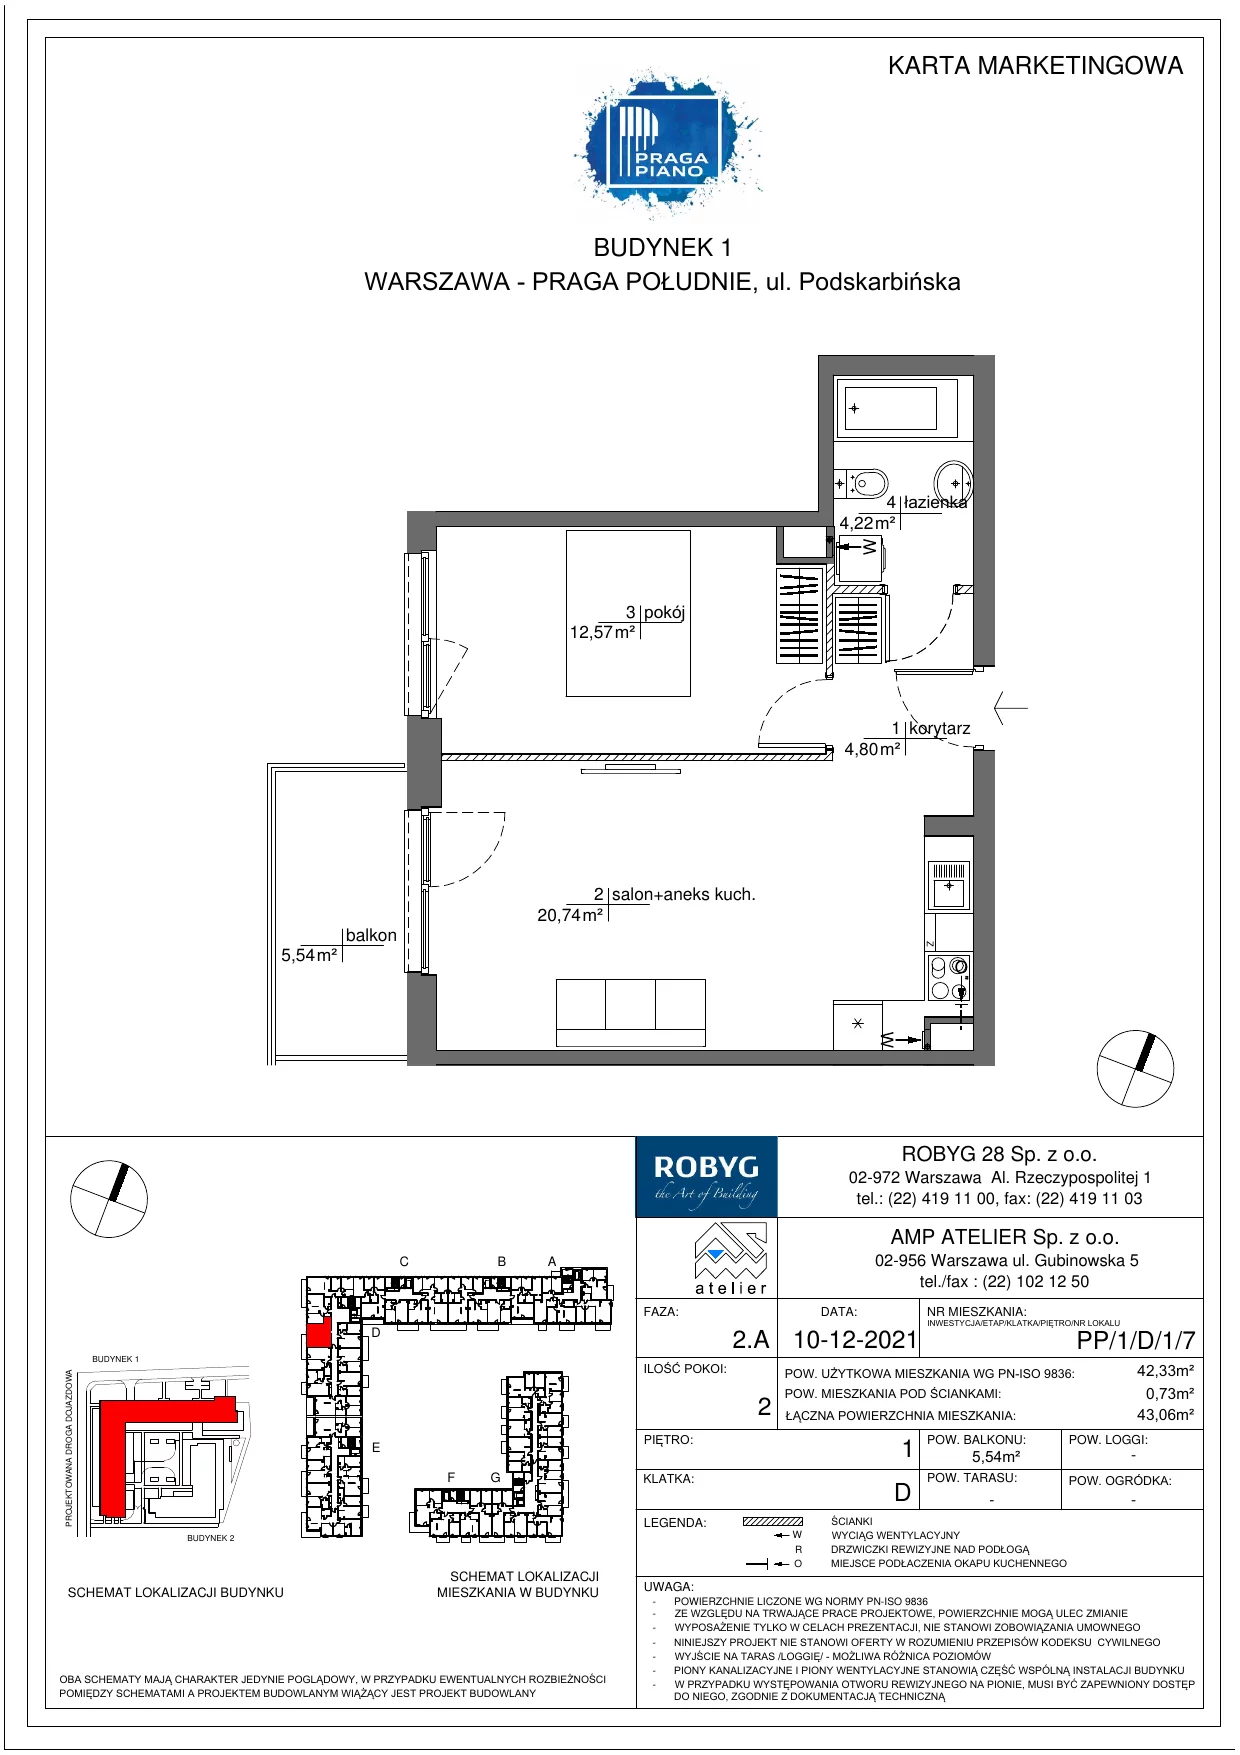 Mieszkanie 42,33 m², piętro 1, oferta nr PP/1/D/1/7, Praga Piano, Warszawa, Praga Południe, Kamionek, ul. Podskarbińska